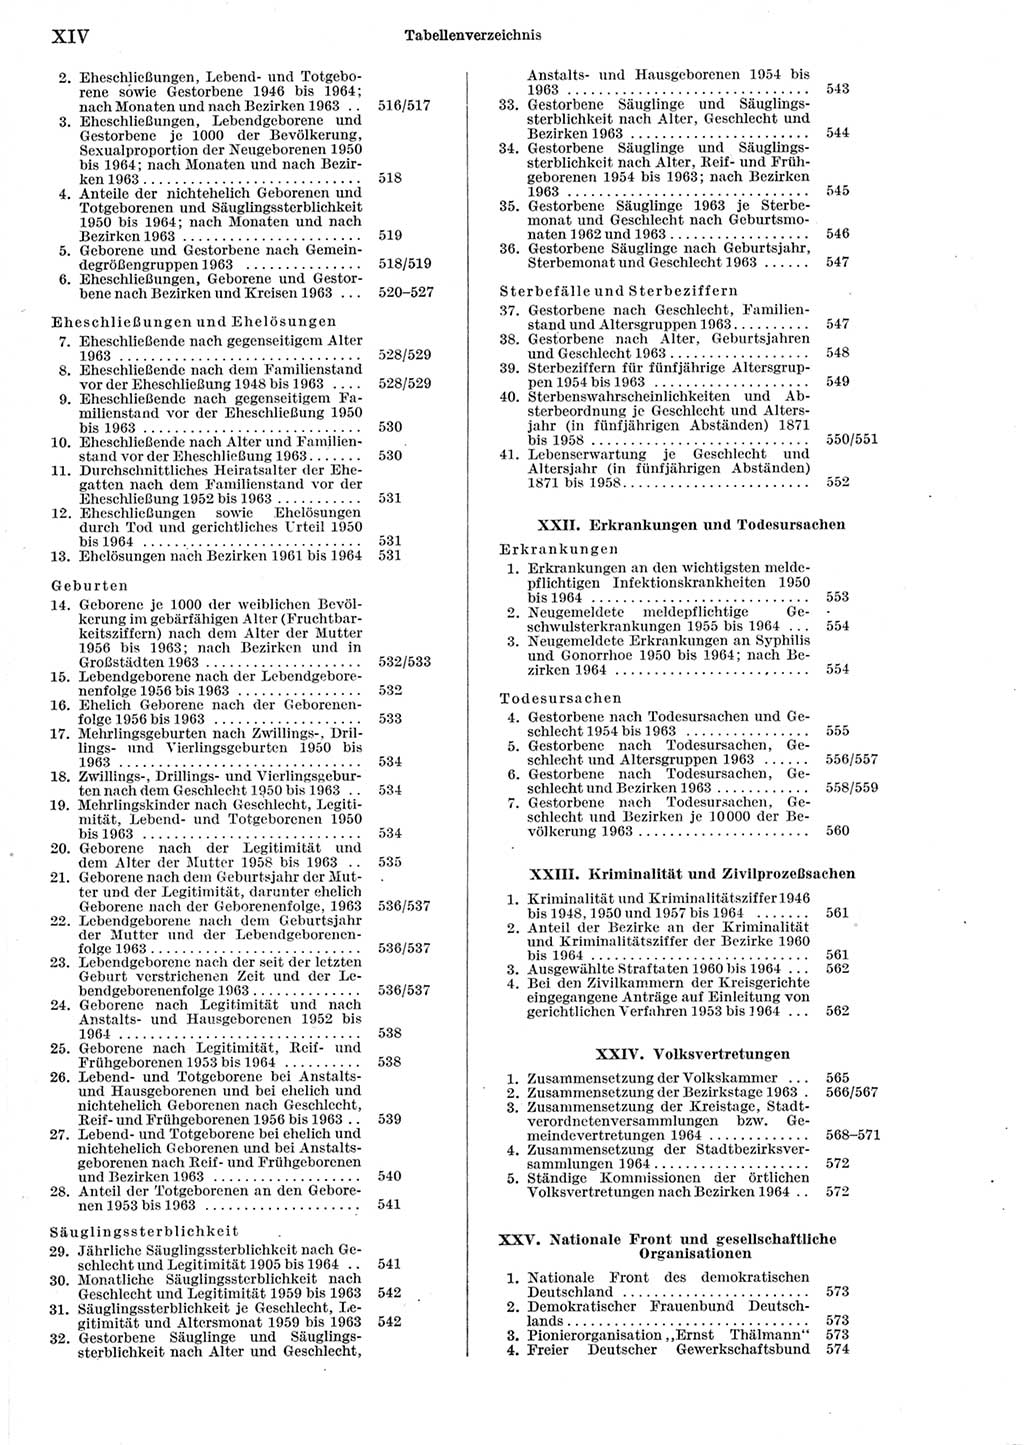 Statistisches Jahrbuch der Deutschen Demokratischen Republik (DDR) 1965, Seite 14 (Stat. Jb. DDR 1965, S. 14)